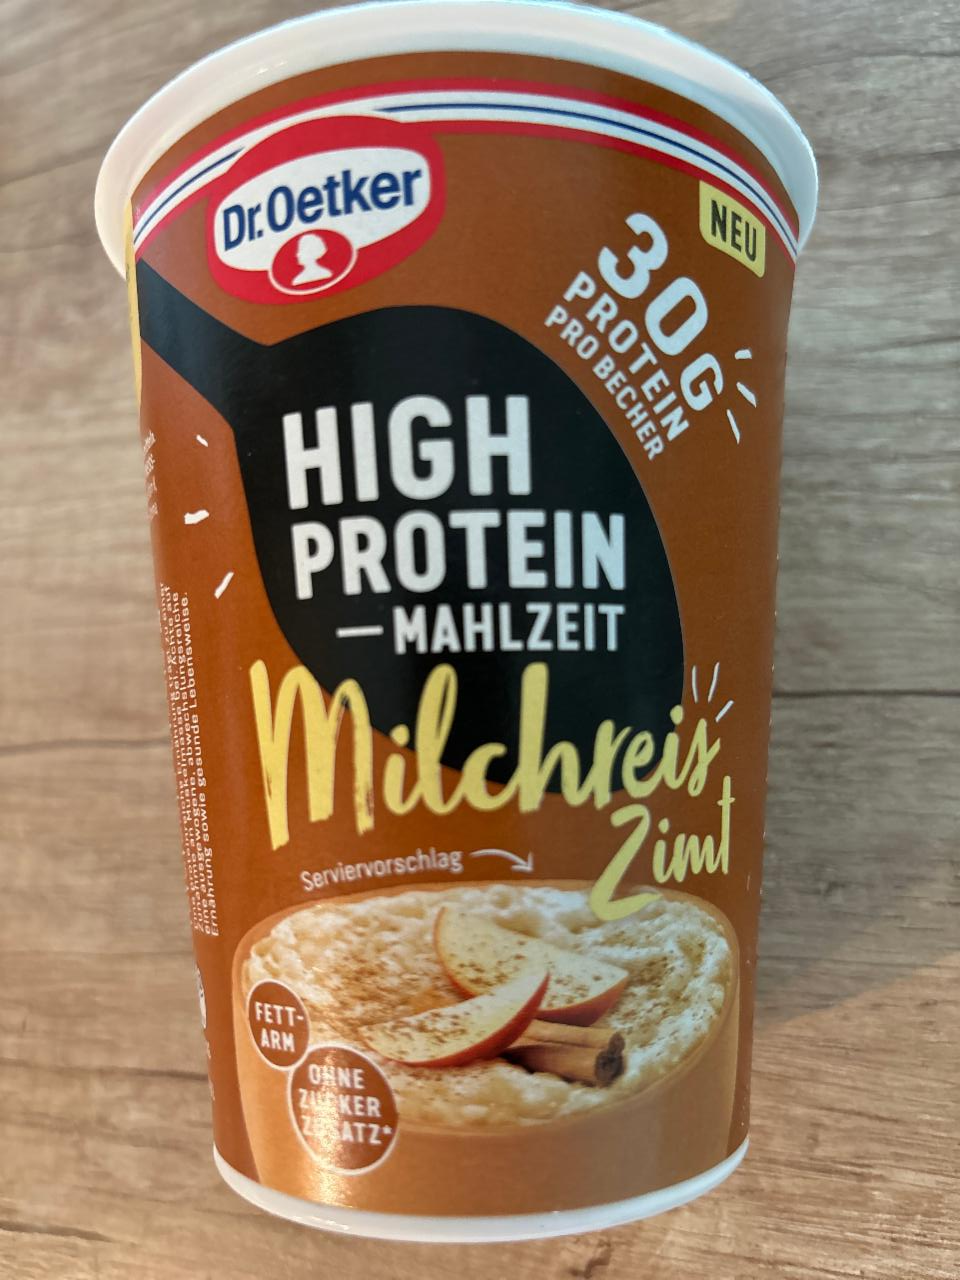 Fotografie - High Protein Mahlzeit Milchreis Zimt Dr.Oetker